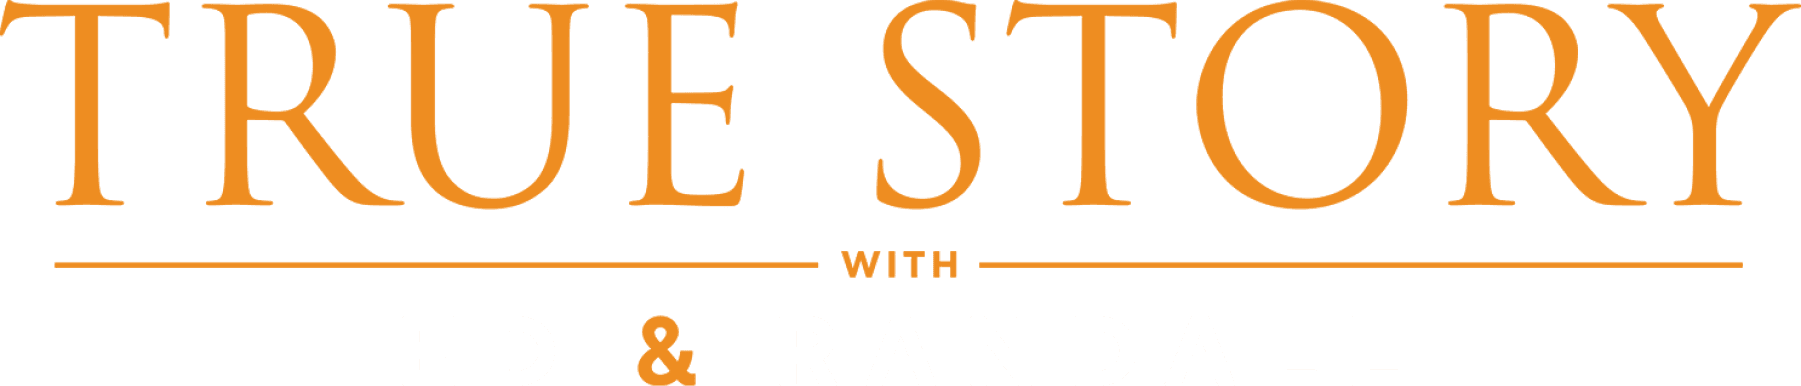 True Story with Ed & Randall logo